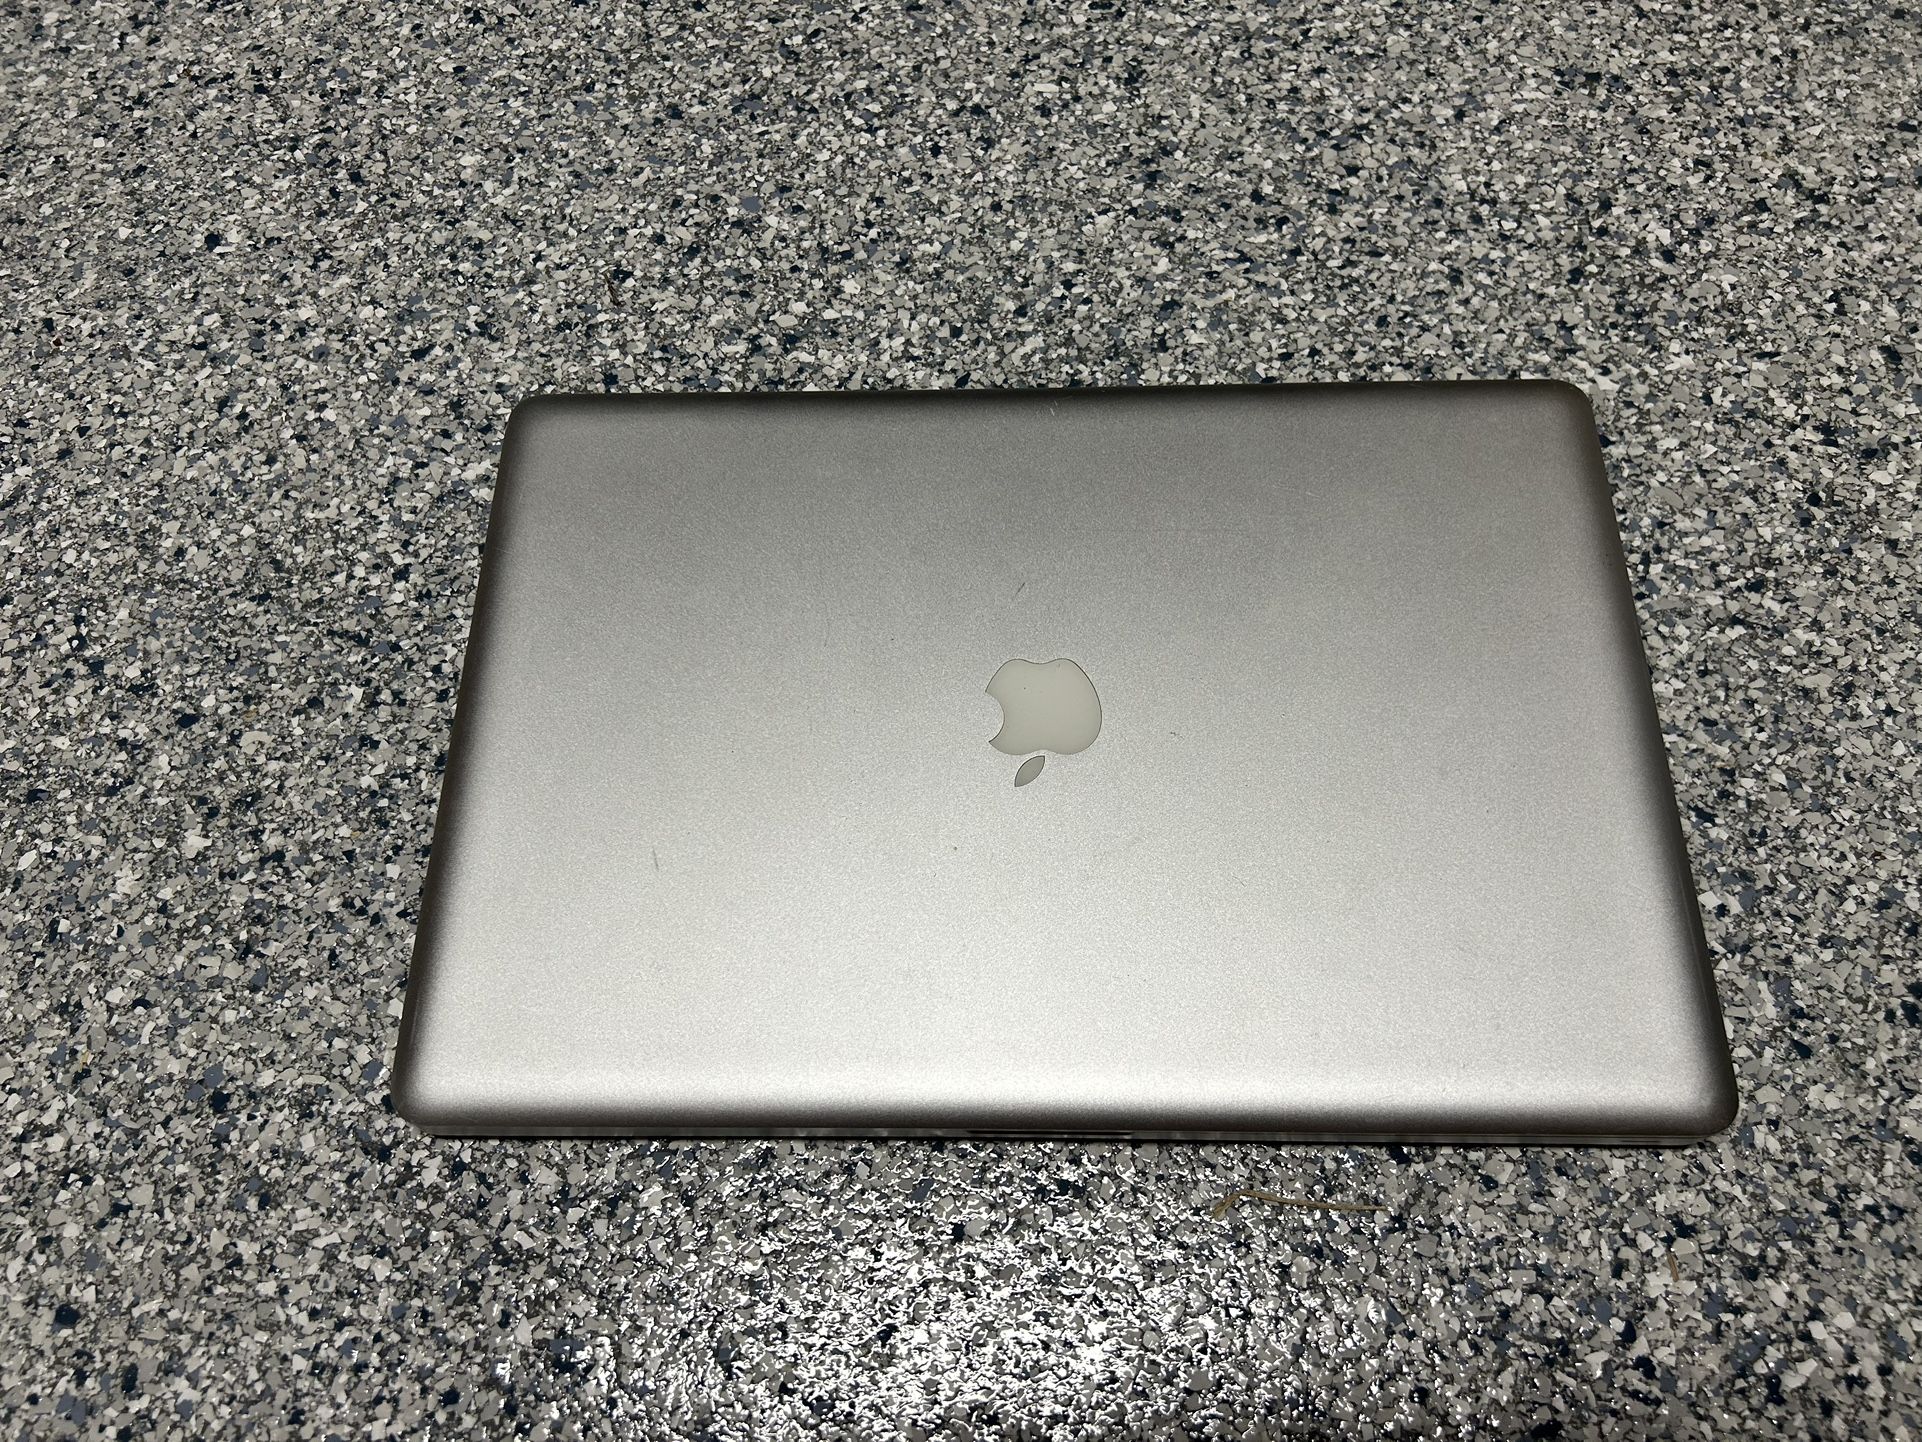 2010 MacBook Pro 17”